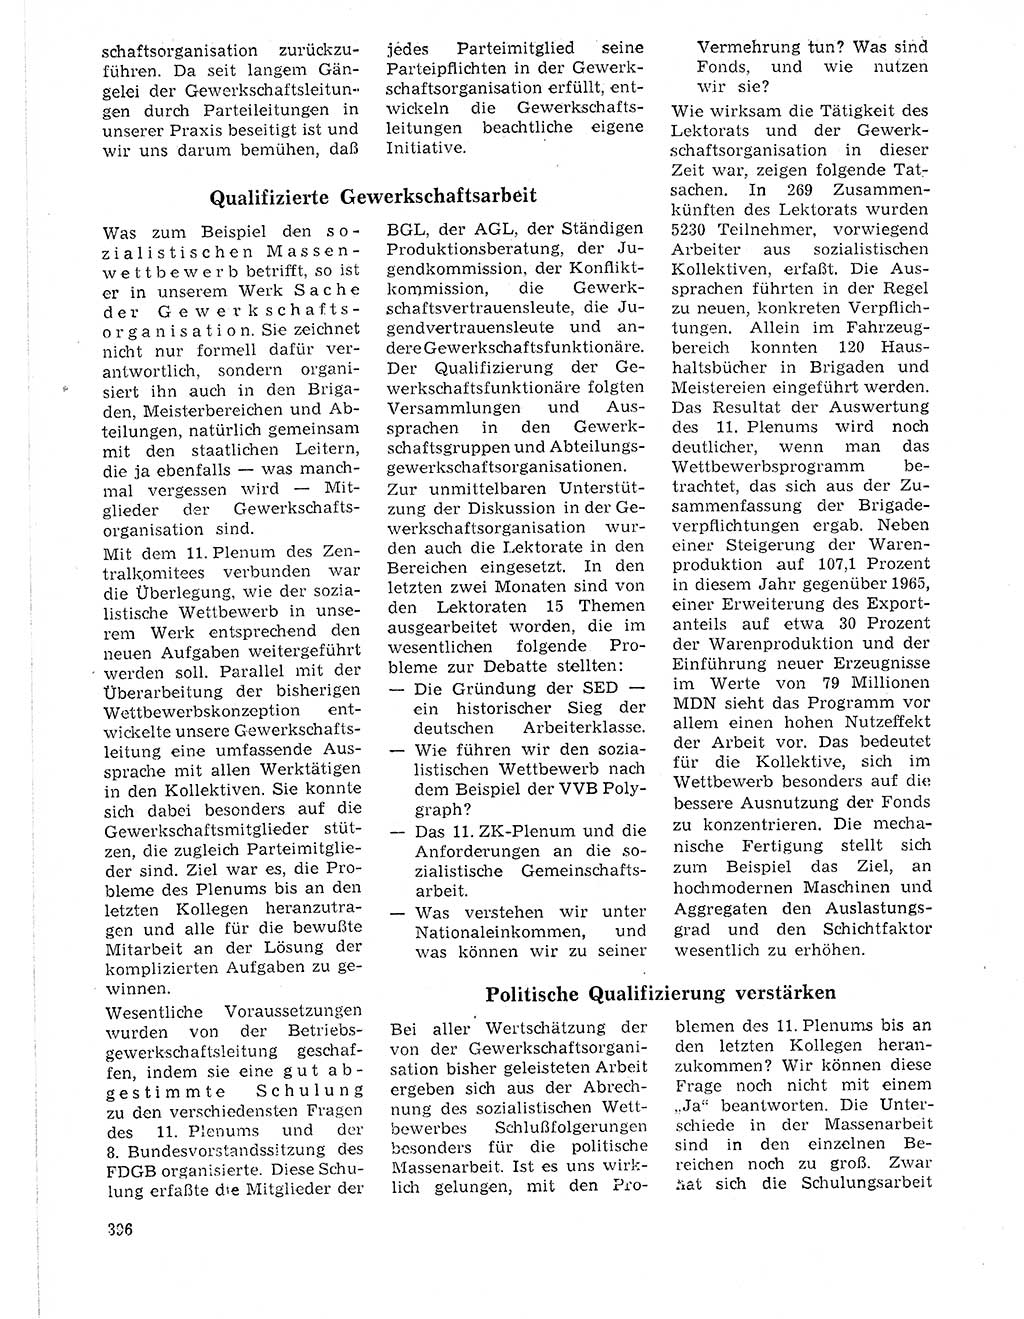 Neuer Weg (NW), Organ des Zentralkomitees (ZK) der SED (Sozialistische Einheitspartei Deutschlands) für Fragen des Parteilebens, 21. Jahrgang [Deutsche Demokratische Republik (DDR)] 1966, Seite 396 (NW ZK SED DDR 1966, S. 396)